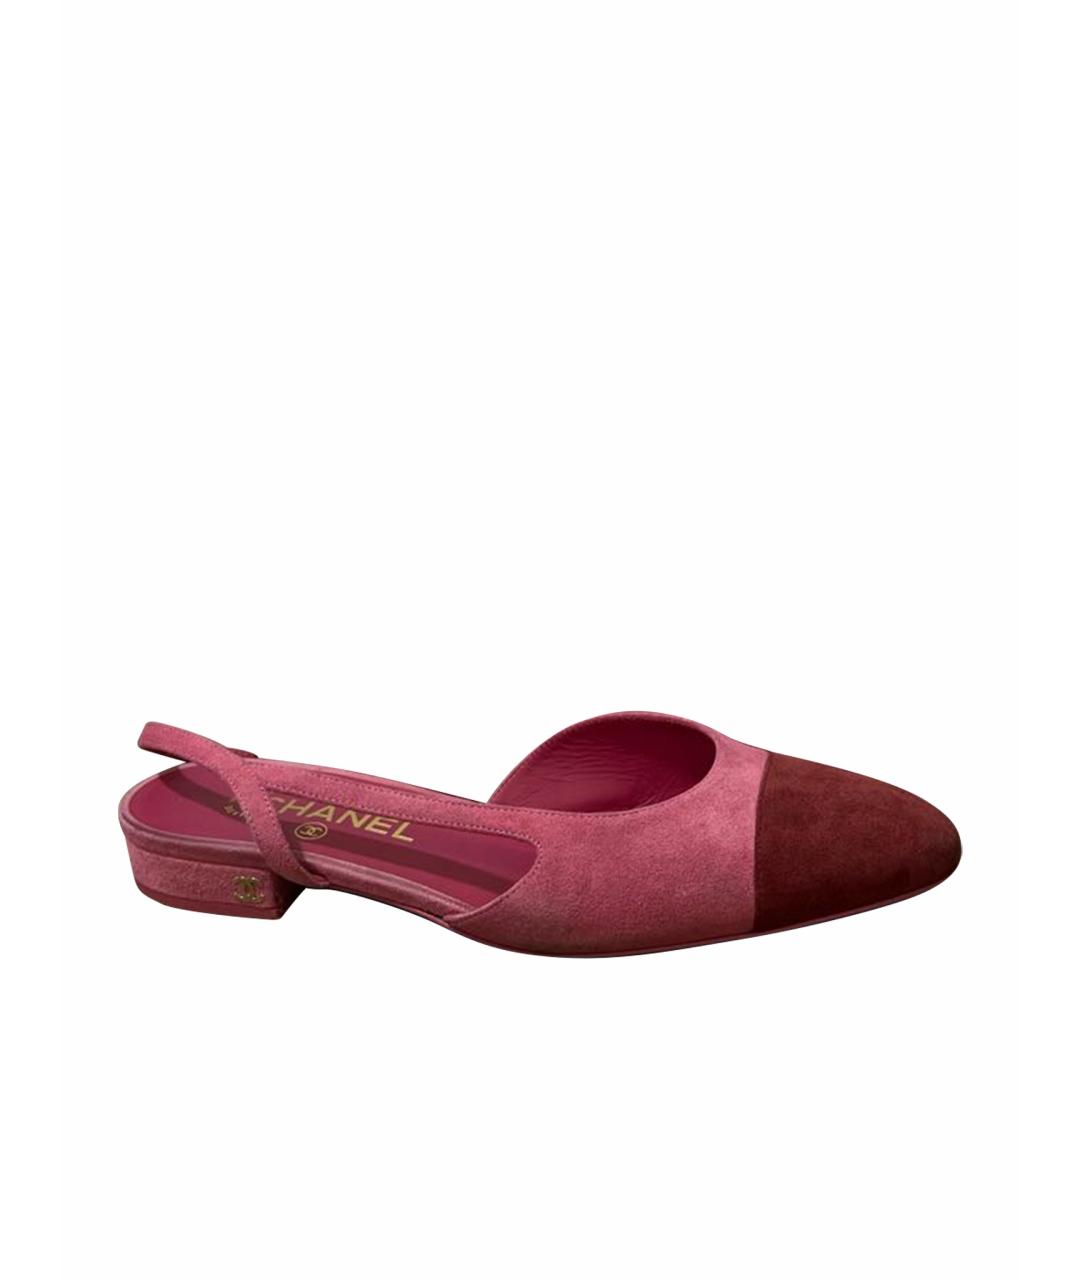 CHANEL PRE-OWNED Розовые замшевые туфли, фото 1